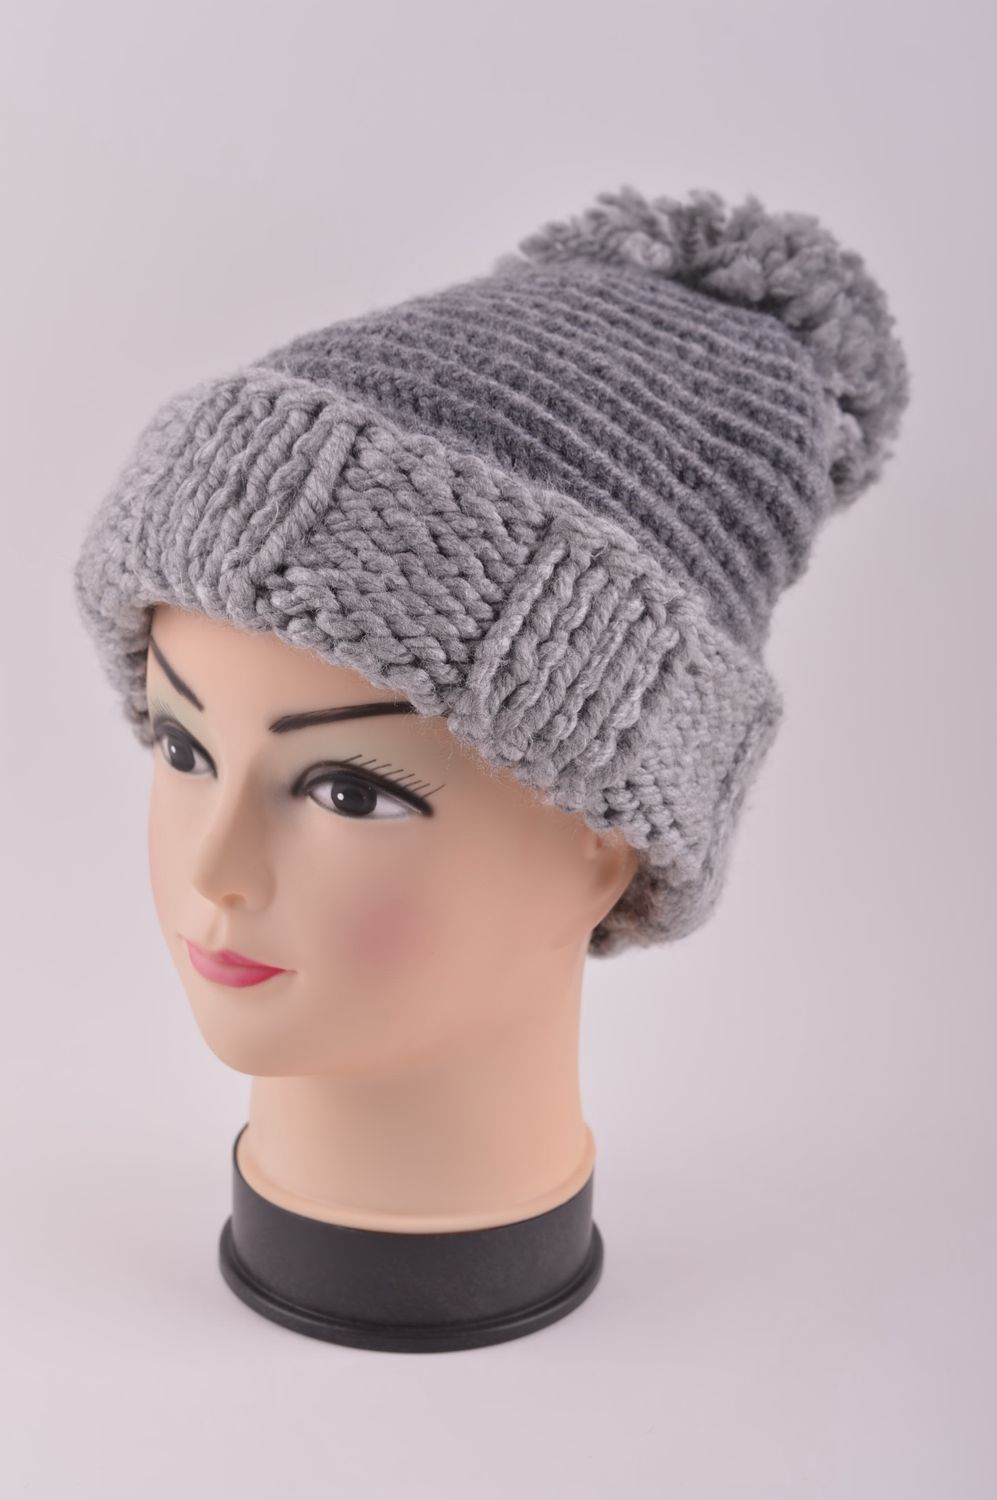 Handmade woolen winter hat hand-knitted hat winter accessories warm hat photo 2